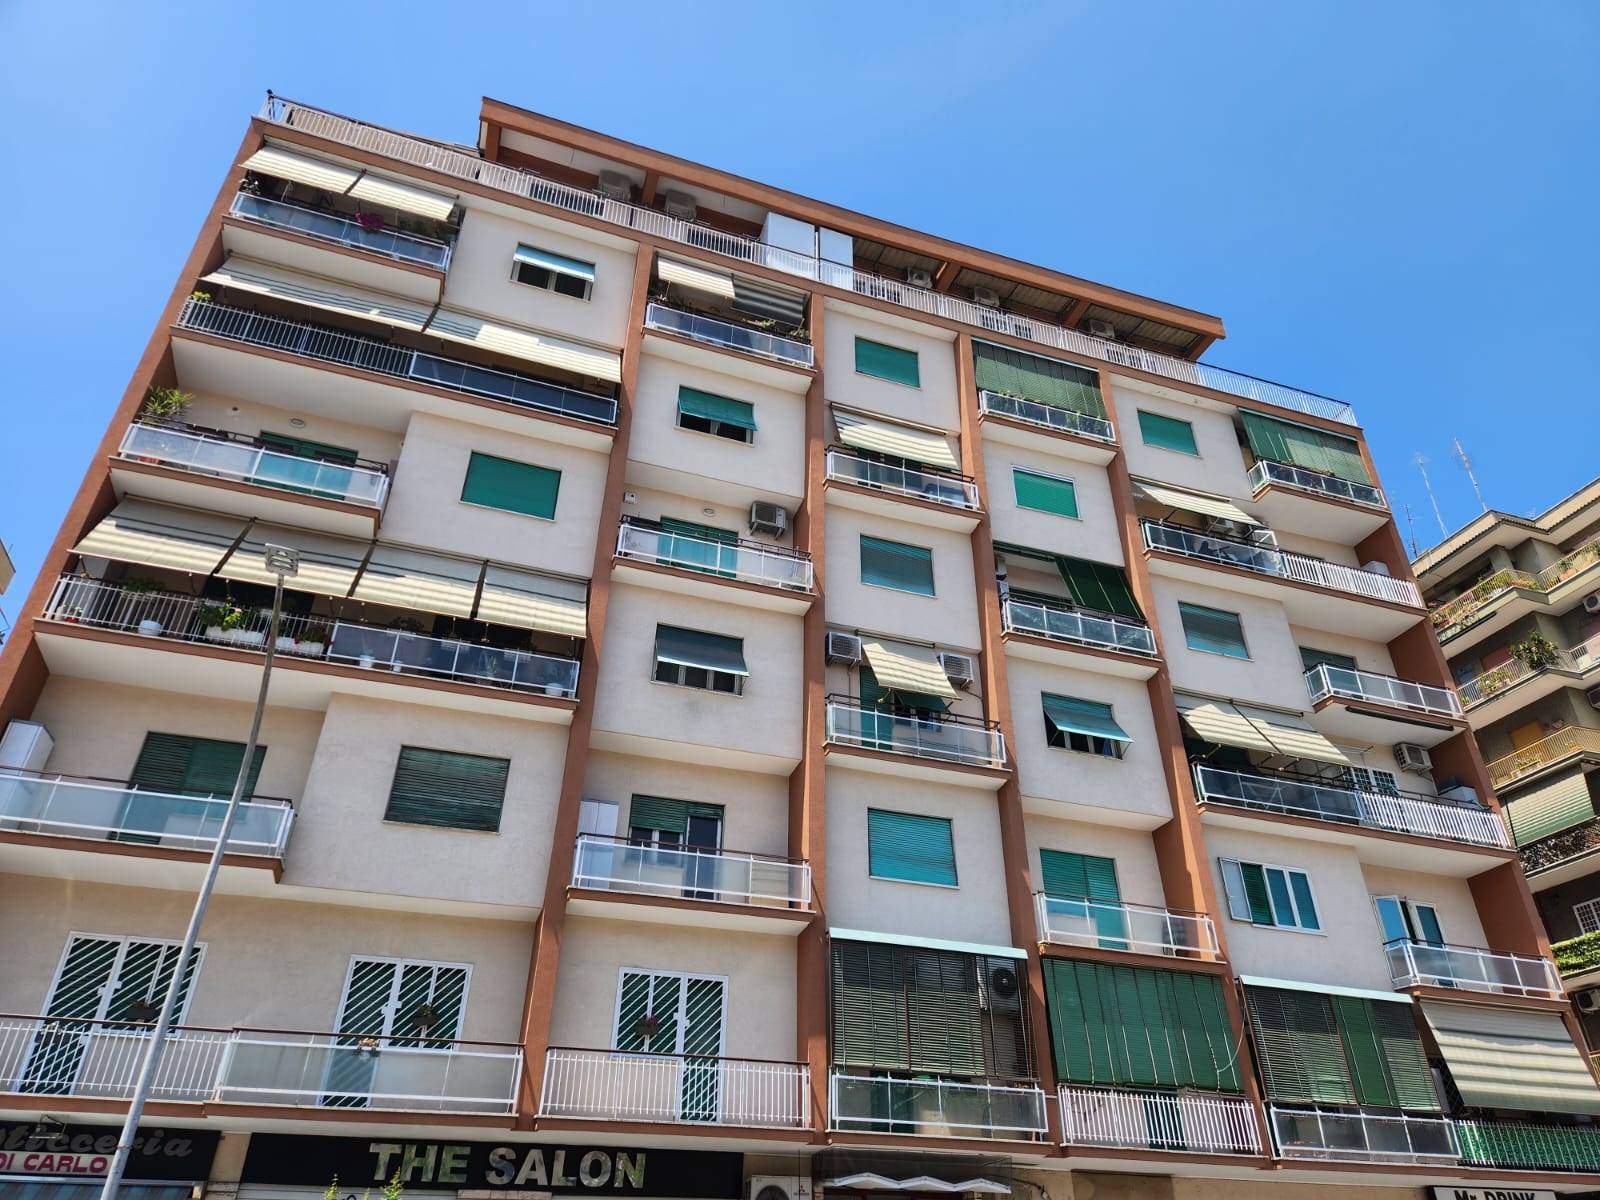 ROMA-CENTOCELLE, precisamente in Via Tor De' Schiavi, proponiamo in VENDITA appartamento di circa 120 Mq PIù 20mq di balconi. L'appartamento è posto al piano primo di una palazzina di sette piani, ed 